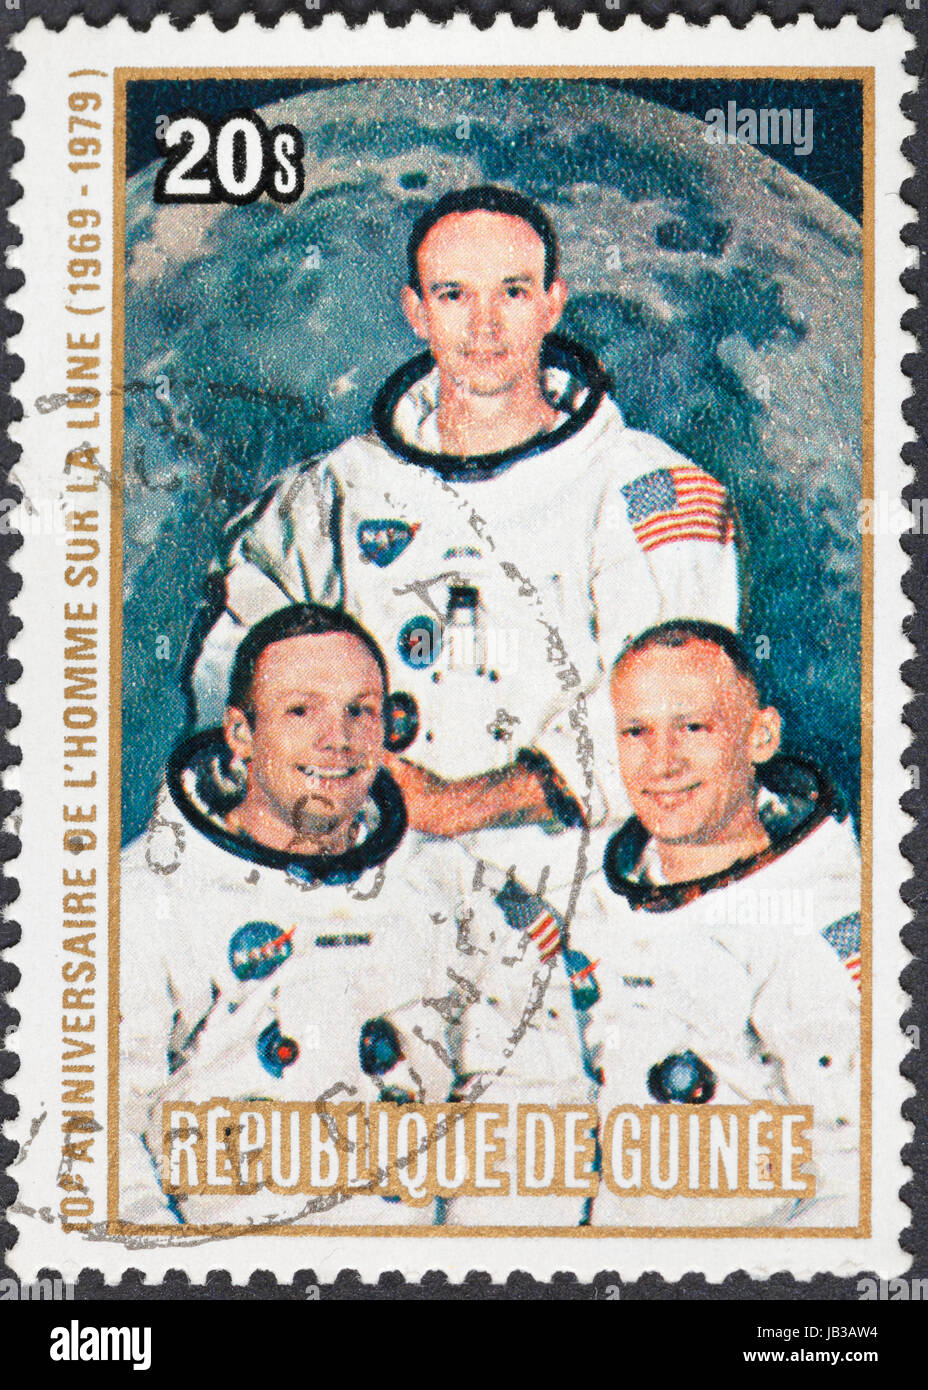 Republik GUINEA - ca. 1979: Eine Briefmarke gedruckt in der Republik Guinea zeigt Apollo 11 Mondlandung und der erste Schritt auf der Mondoberfläche - Porträt Armstrong, Collins, Aldrin, ca. 1979 Stockfoto